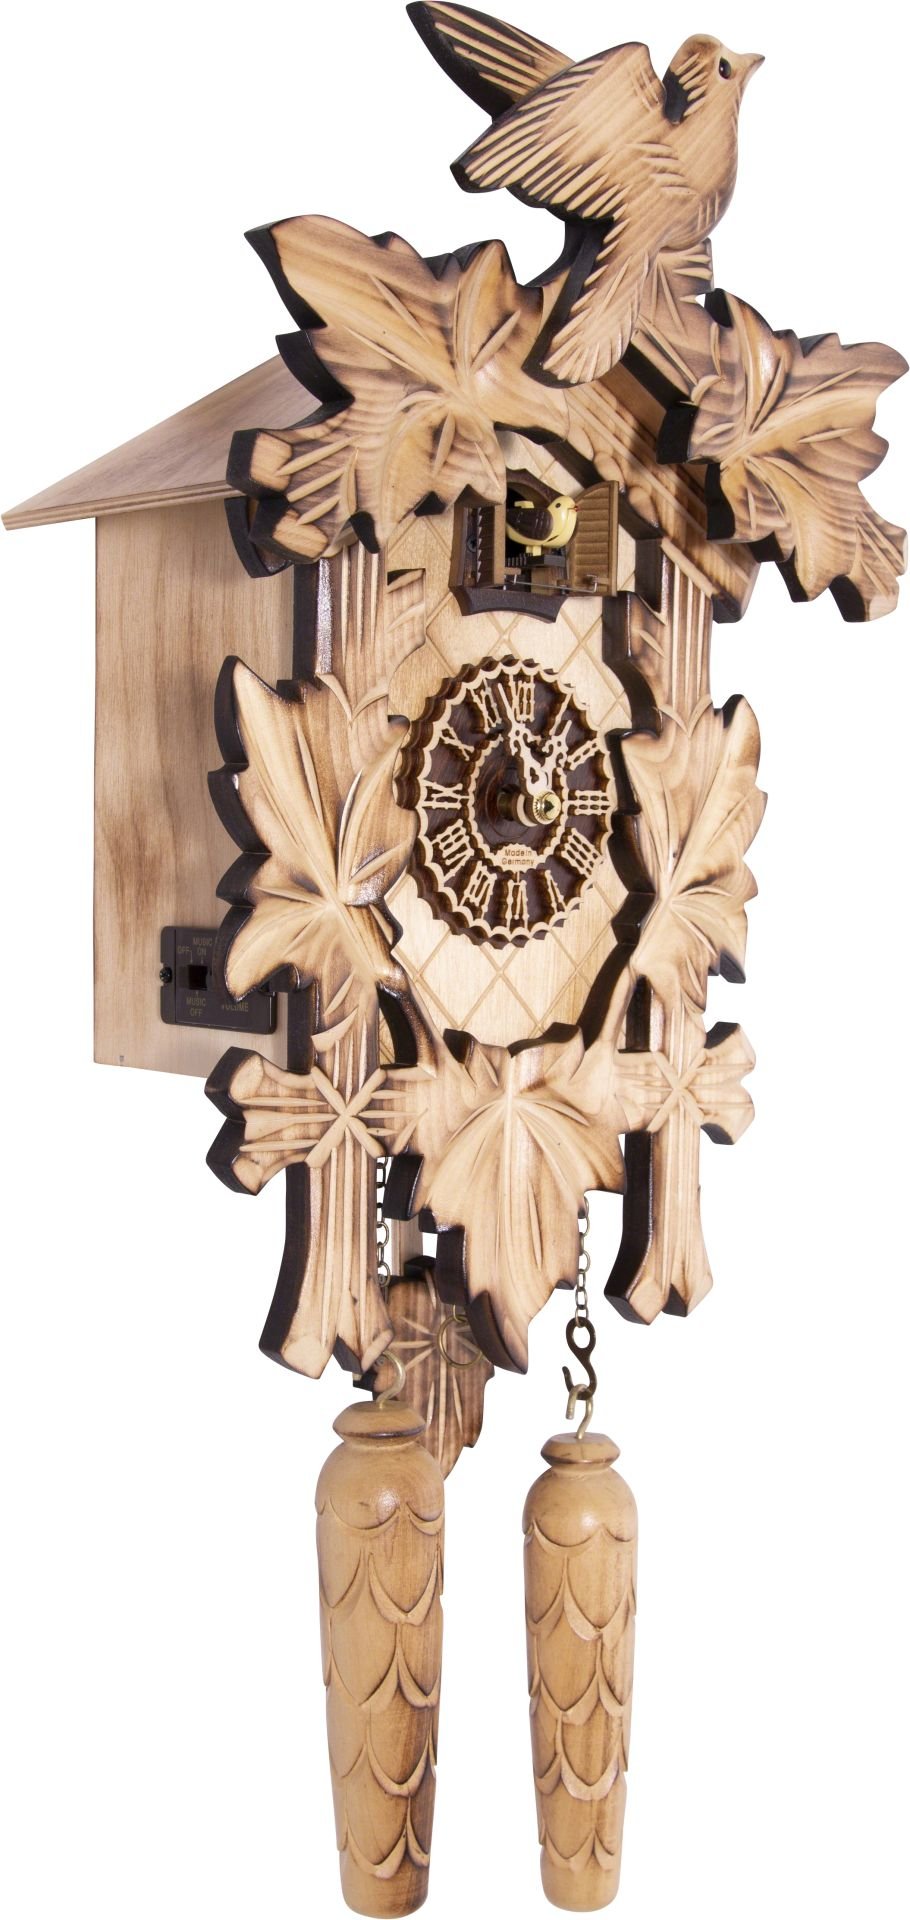 Horloge coucou traditionnelle mouvement à quartz 36cm de Trenkle Uhren